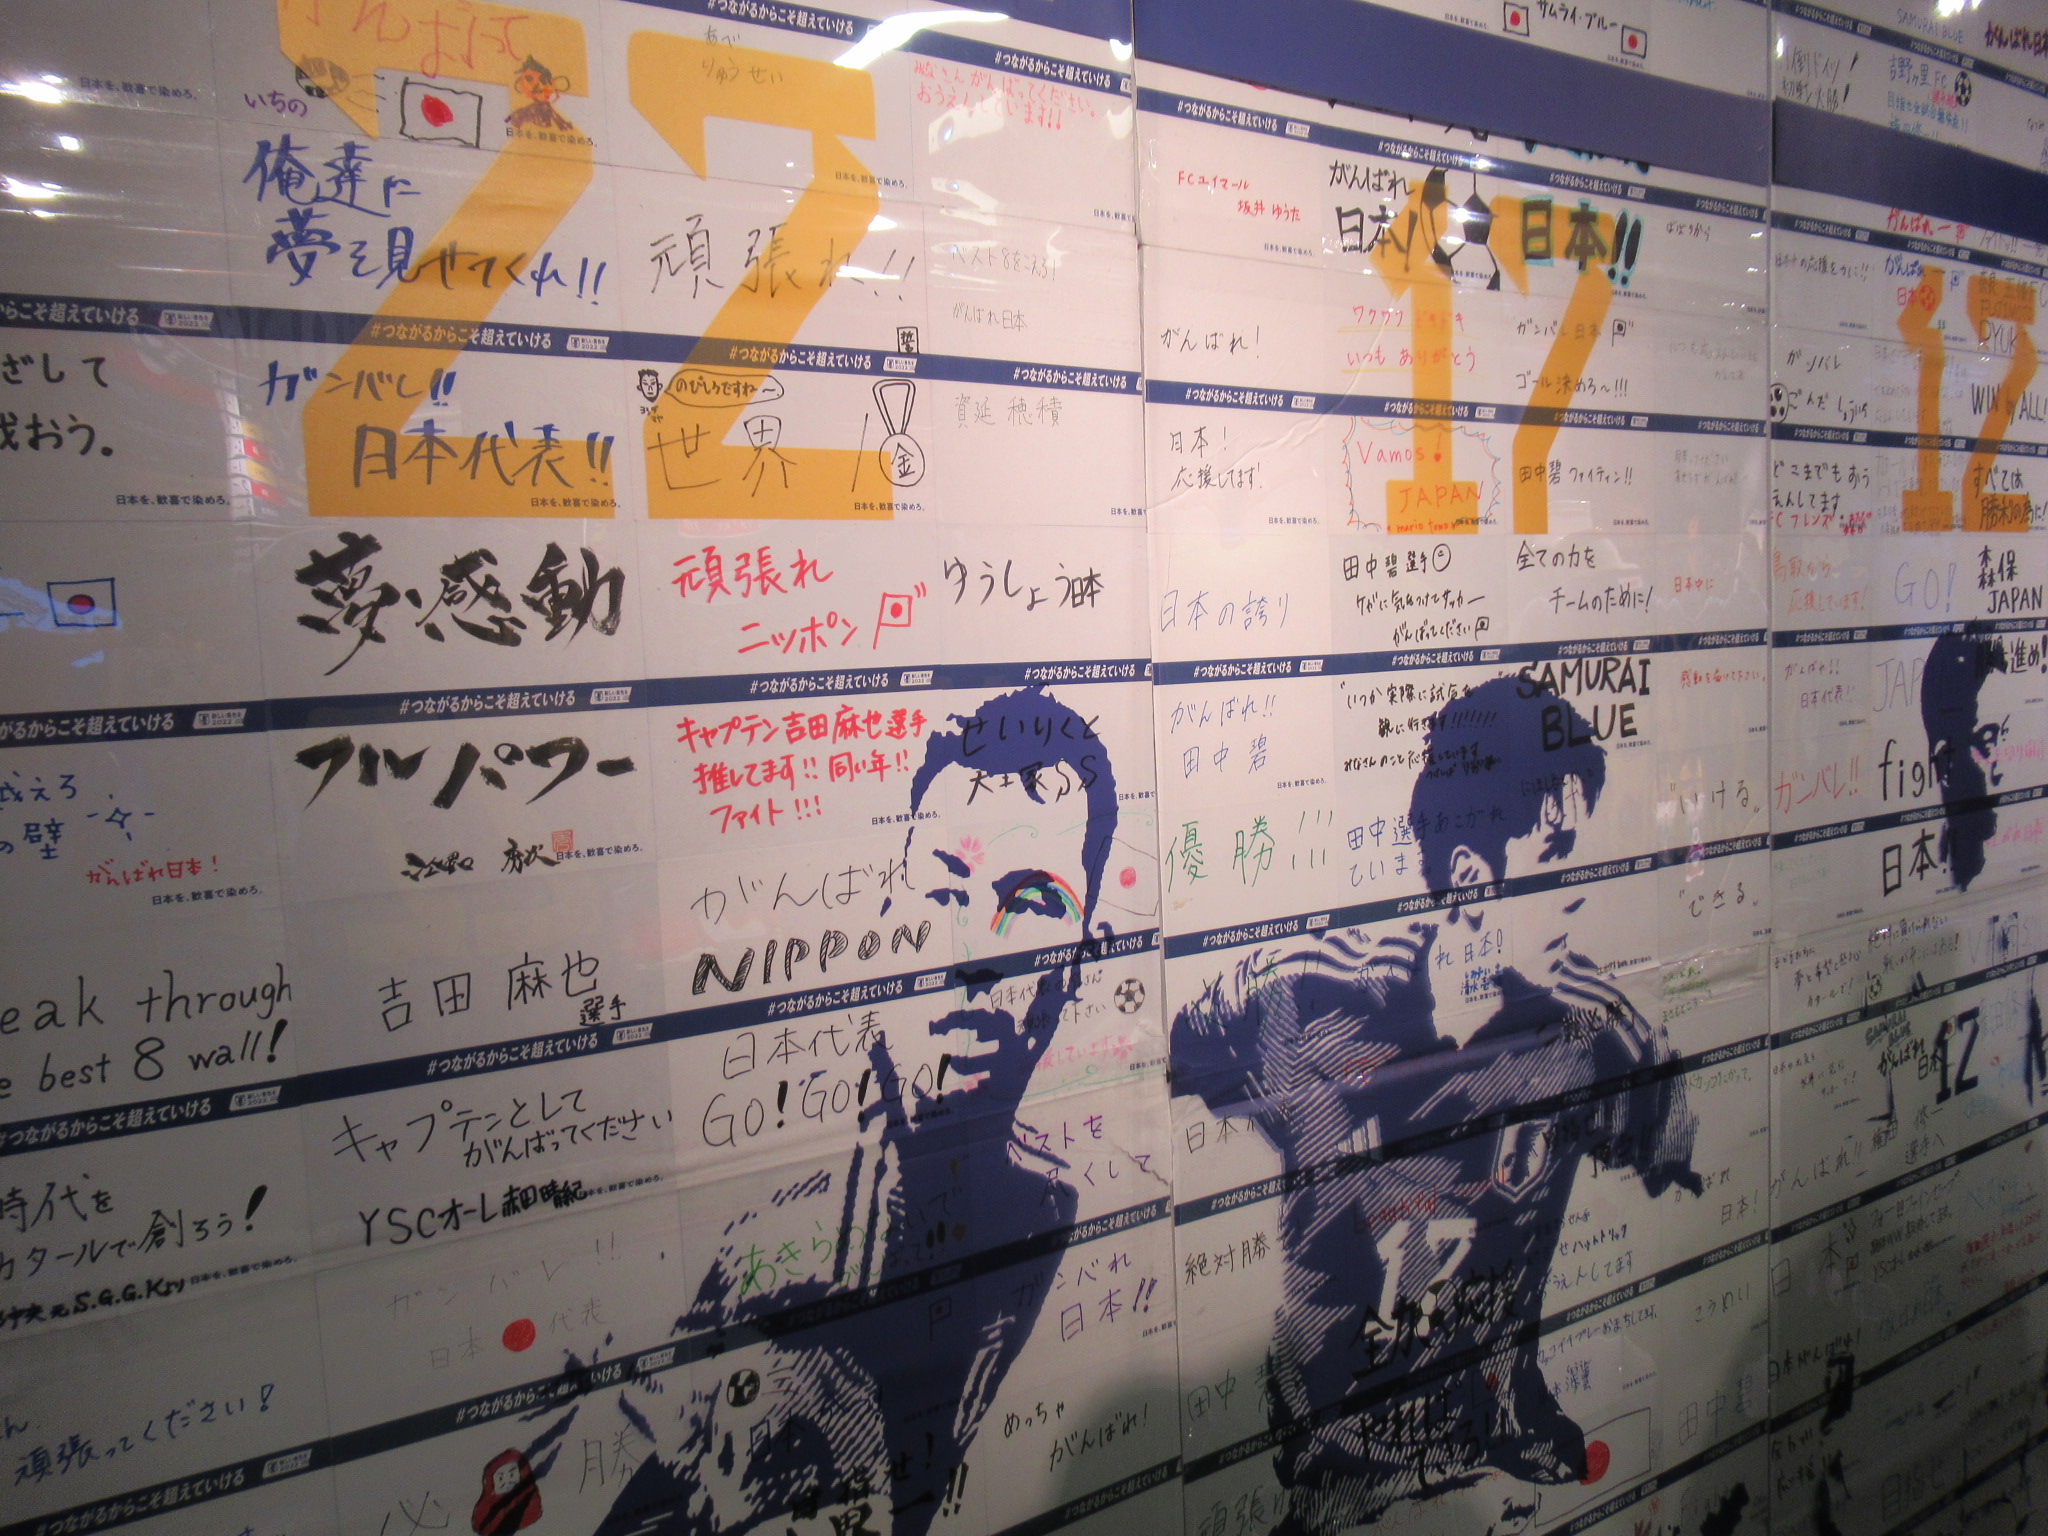 写满球迷留言的日本队展板公开展览，梦想、骄傲等字样清晰可见